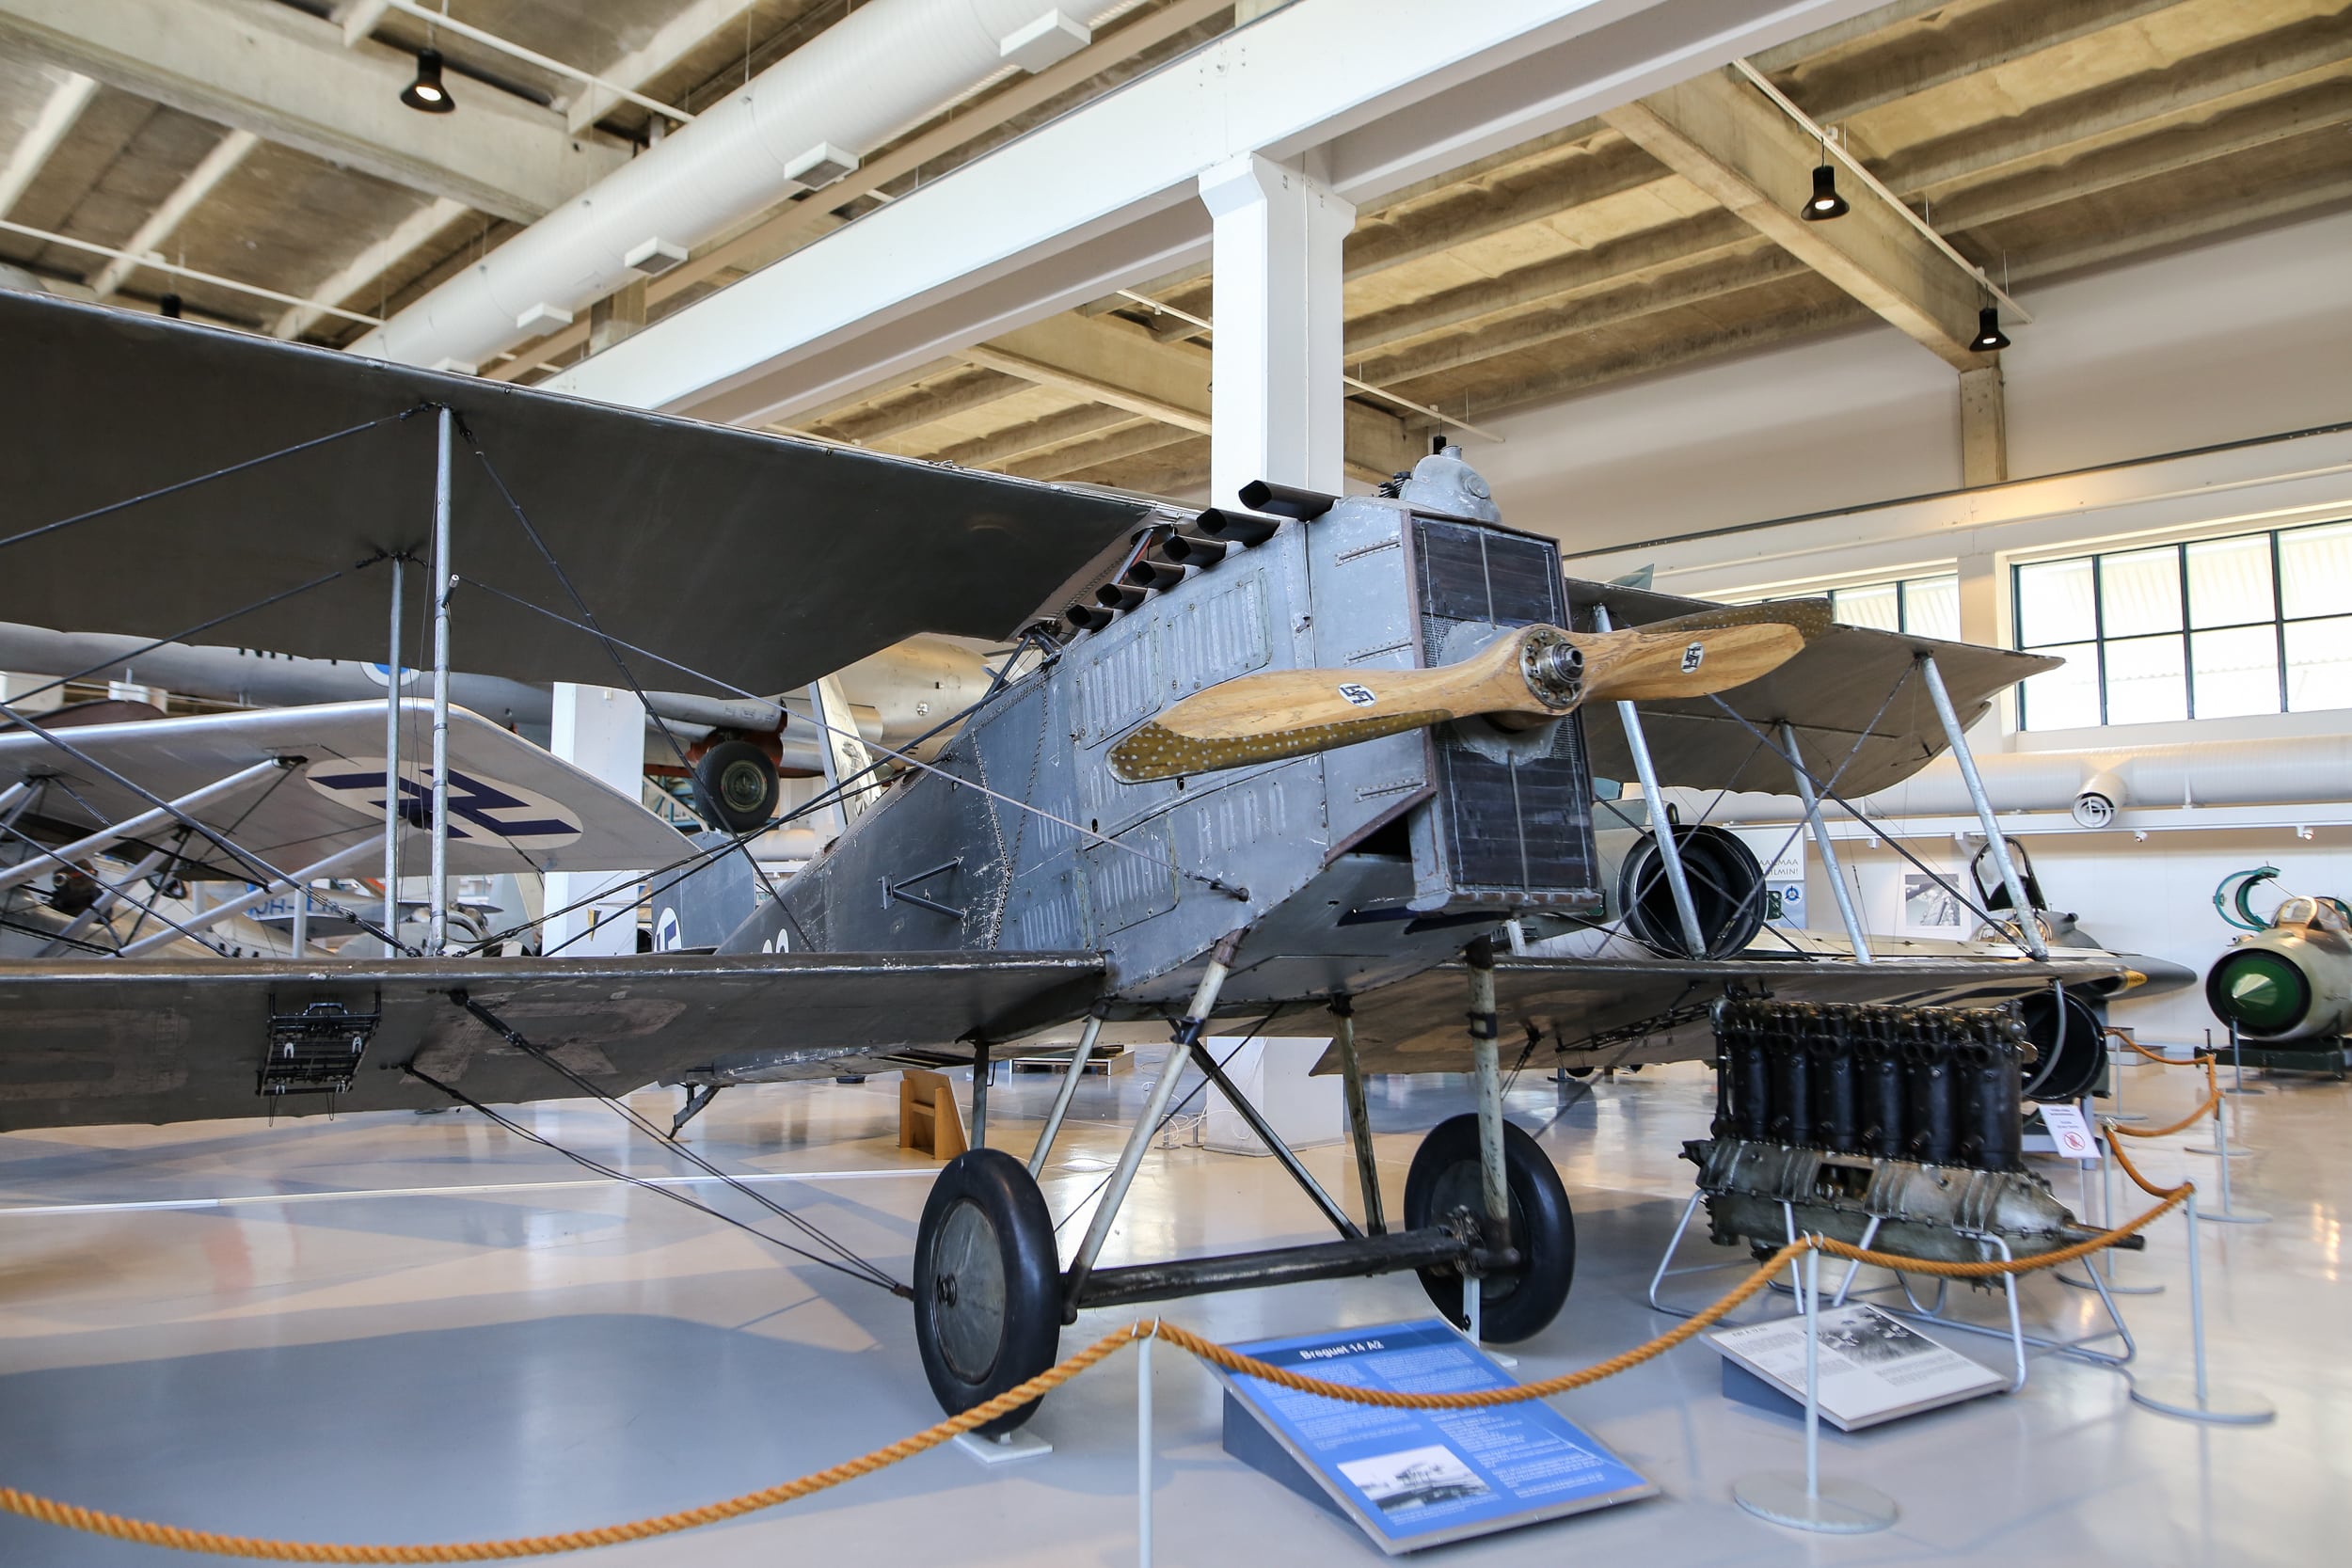 Kaksitasoinen, harmaa, puupotkurilla varustettu Breguet-lentokone näyttelyhallissa.